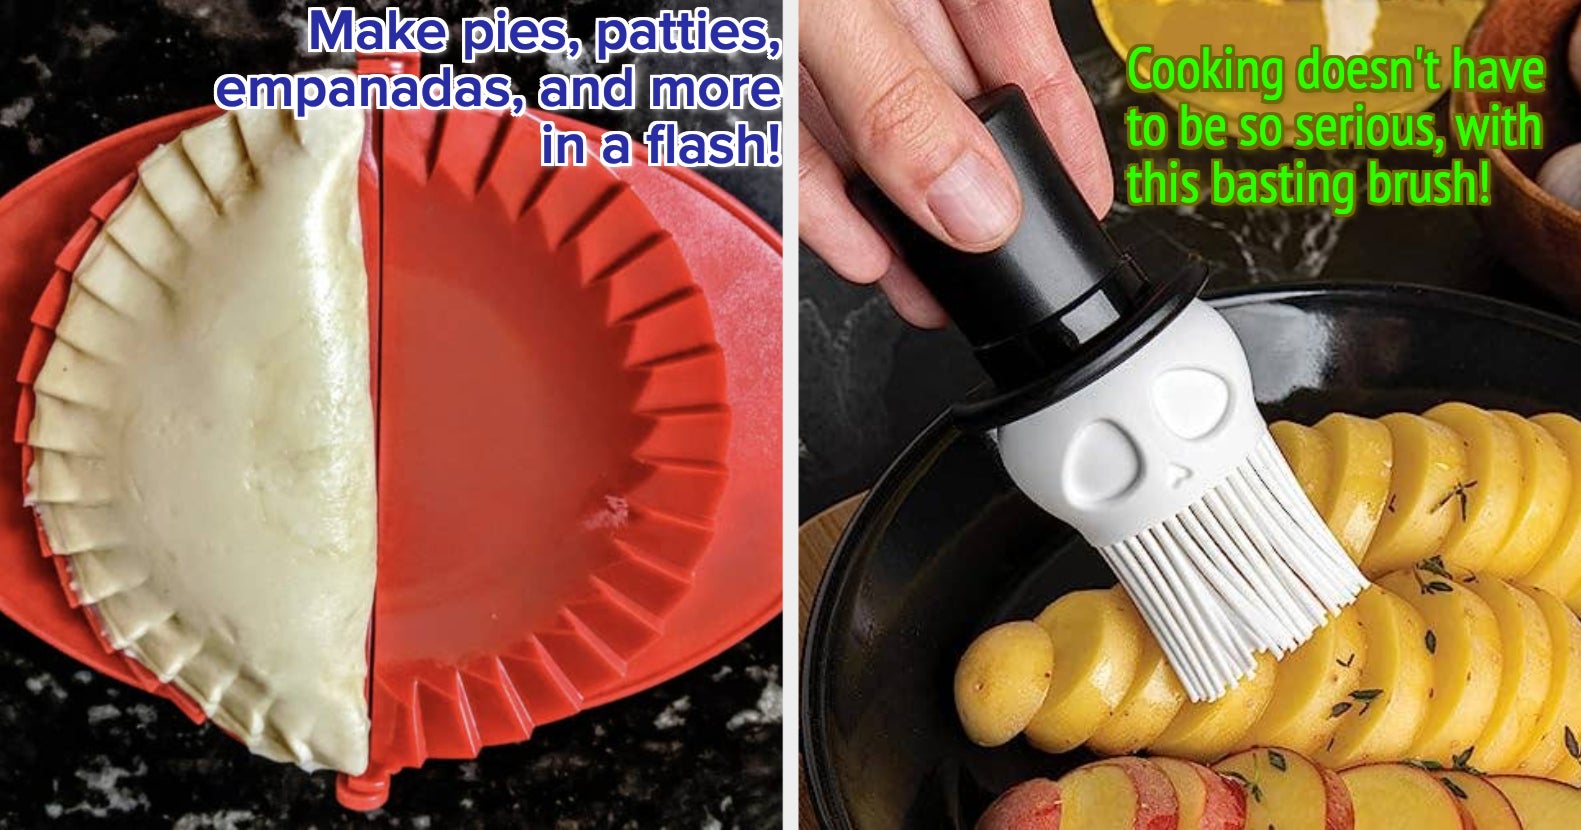 Red Thin Apple Slicer Prepworks Push Flip Pop Cover Safely Pops